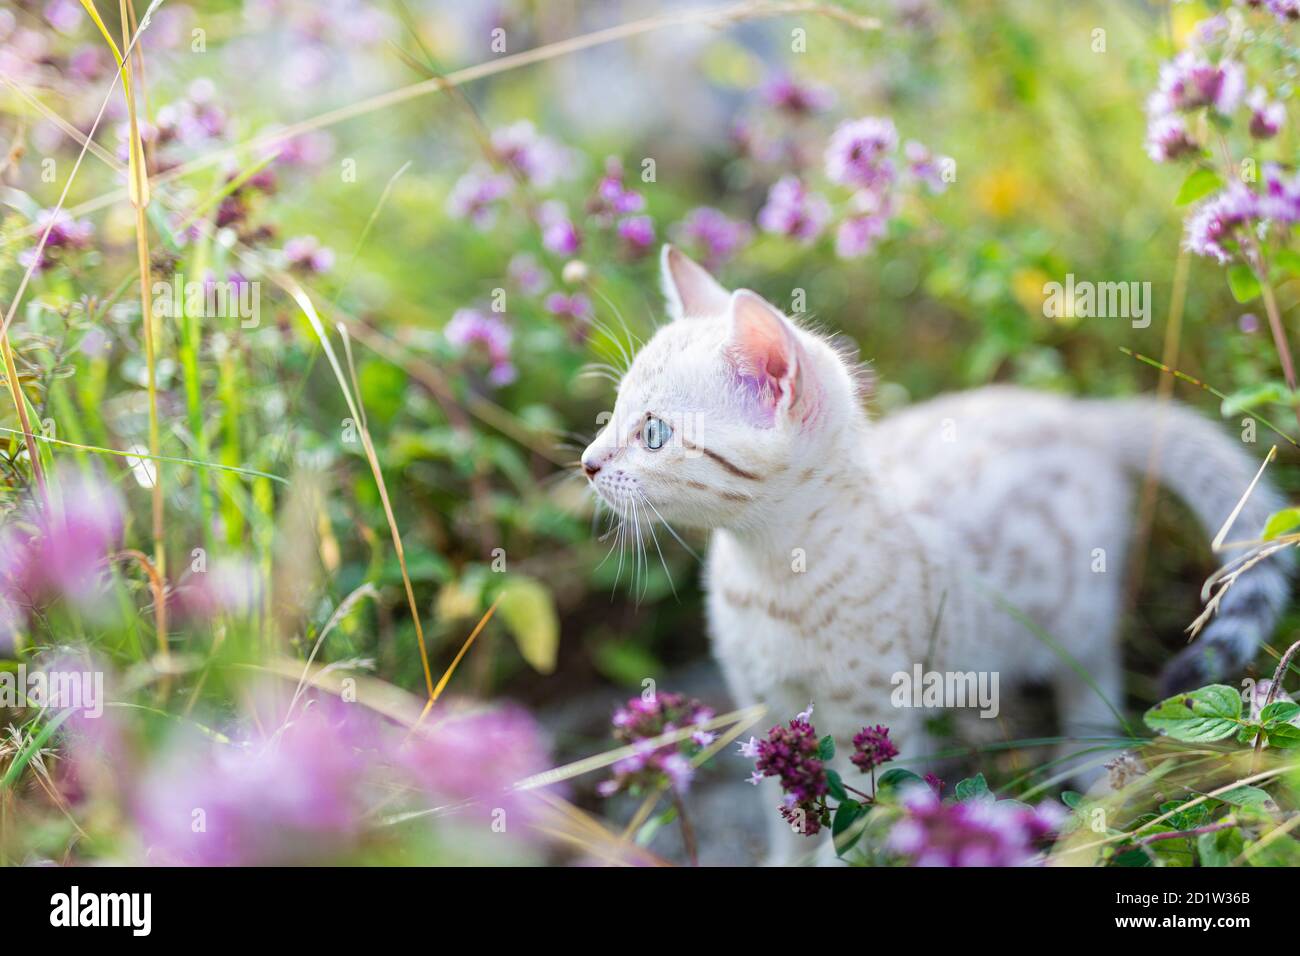 Un joli petit chaton blanc de la neige Bengale entouré de fleurs violettes, herbe d'origan. Le petit chat curieux a 7 semaines. Le chat est centré Banque D'Images